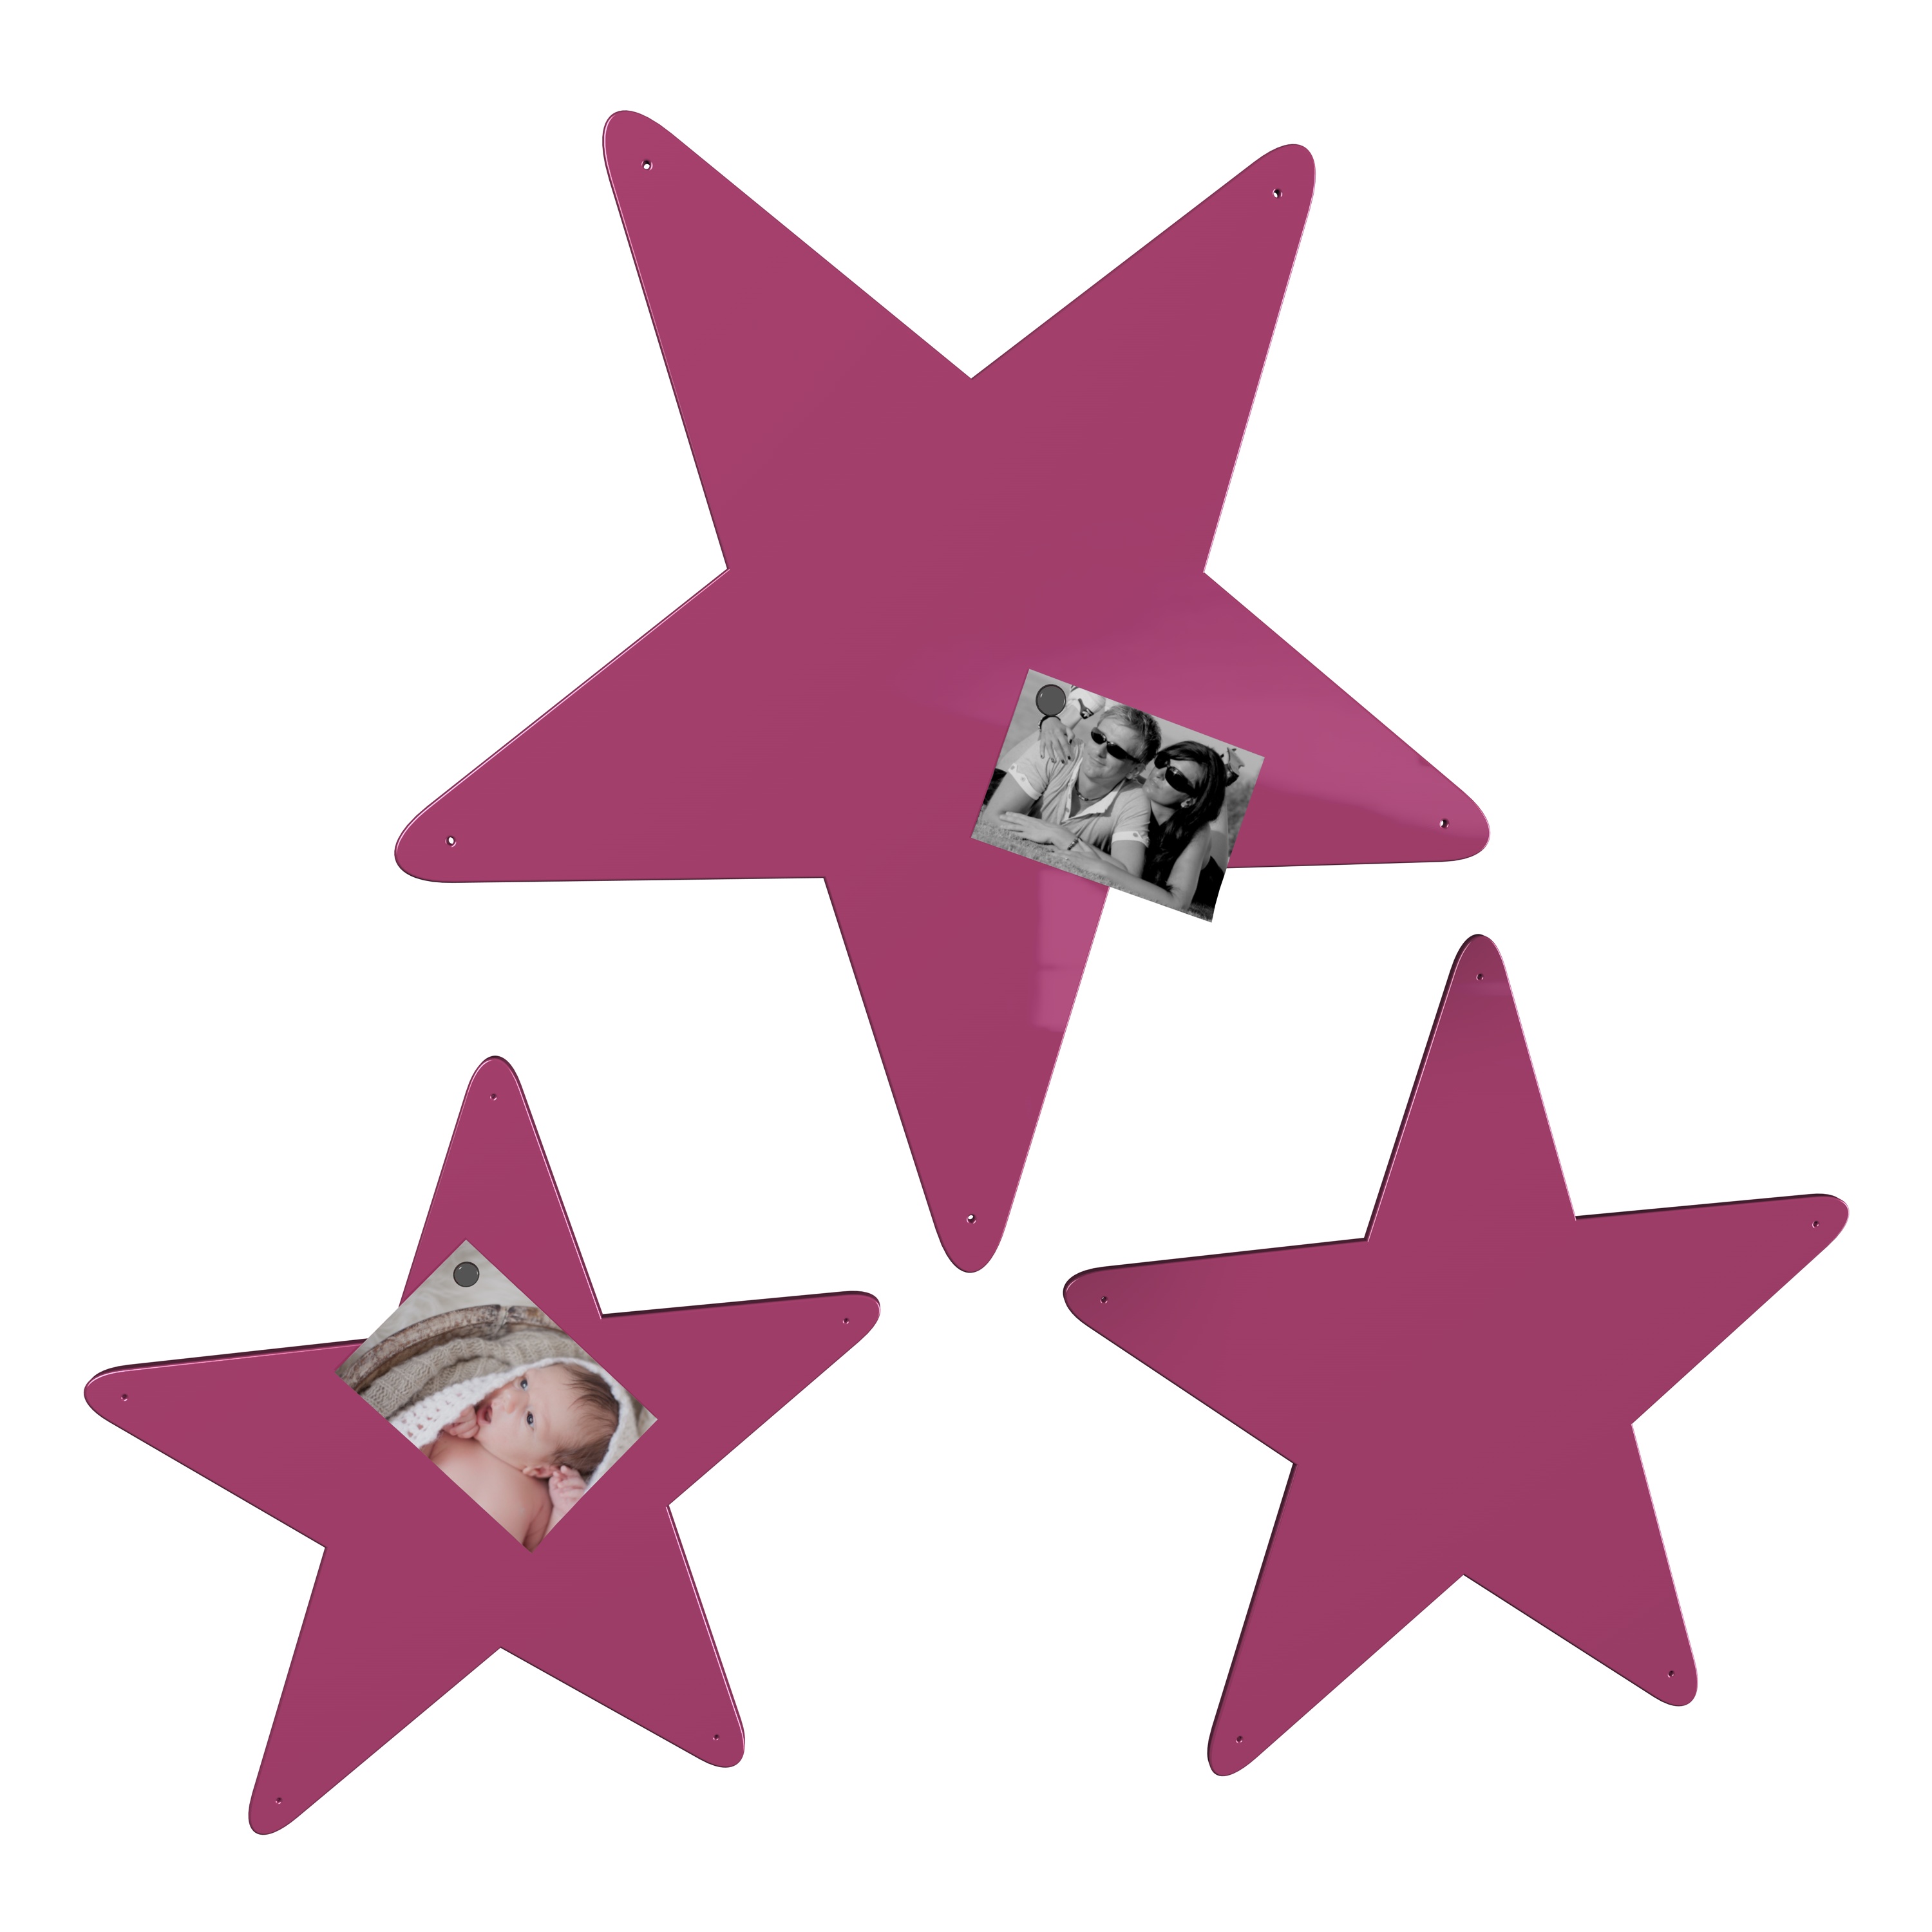 Magnetwand Magnettafel Memoboard - Sterne 3er-Set - RAL 4010 telemagenta pink rosa